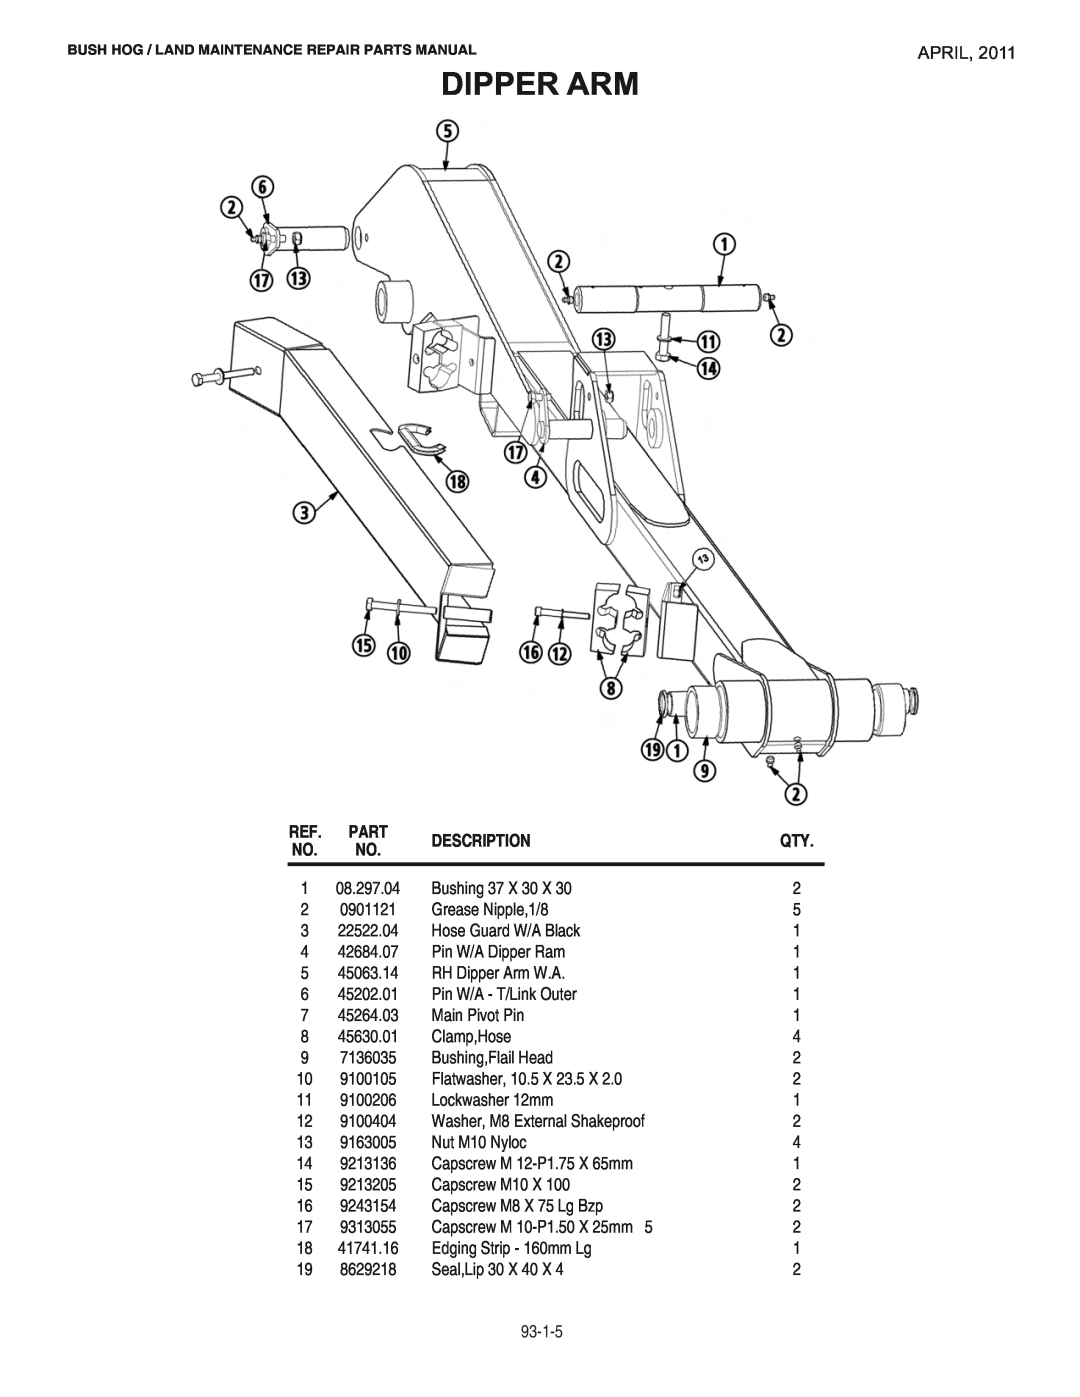 Bush Hog RMB1865E manual Dipper Arm, April, Description 